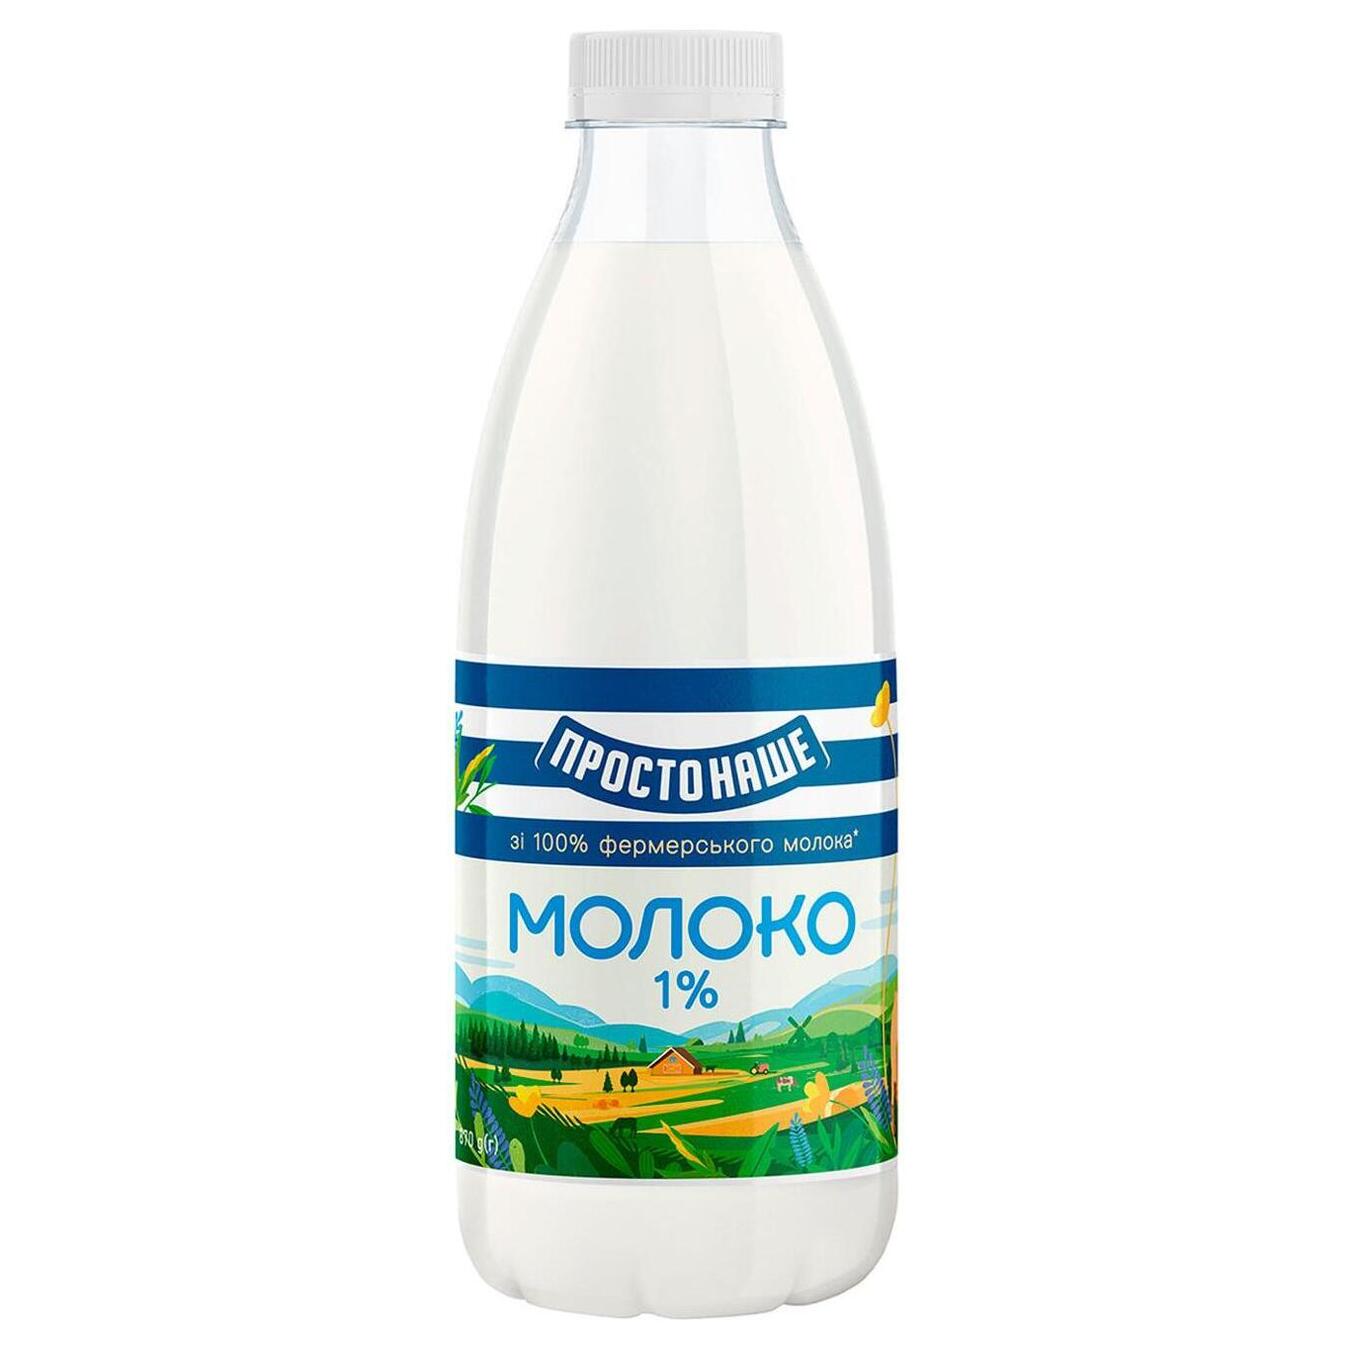 Молоко пастеризоване Простонаше 1% 870